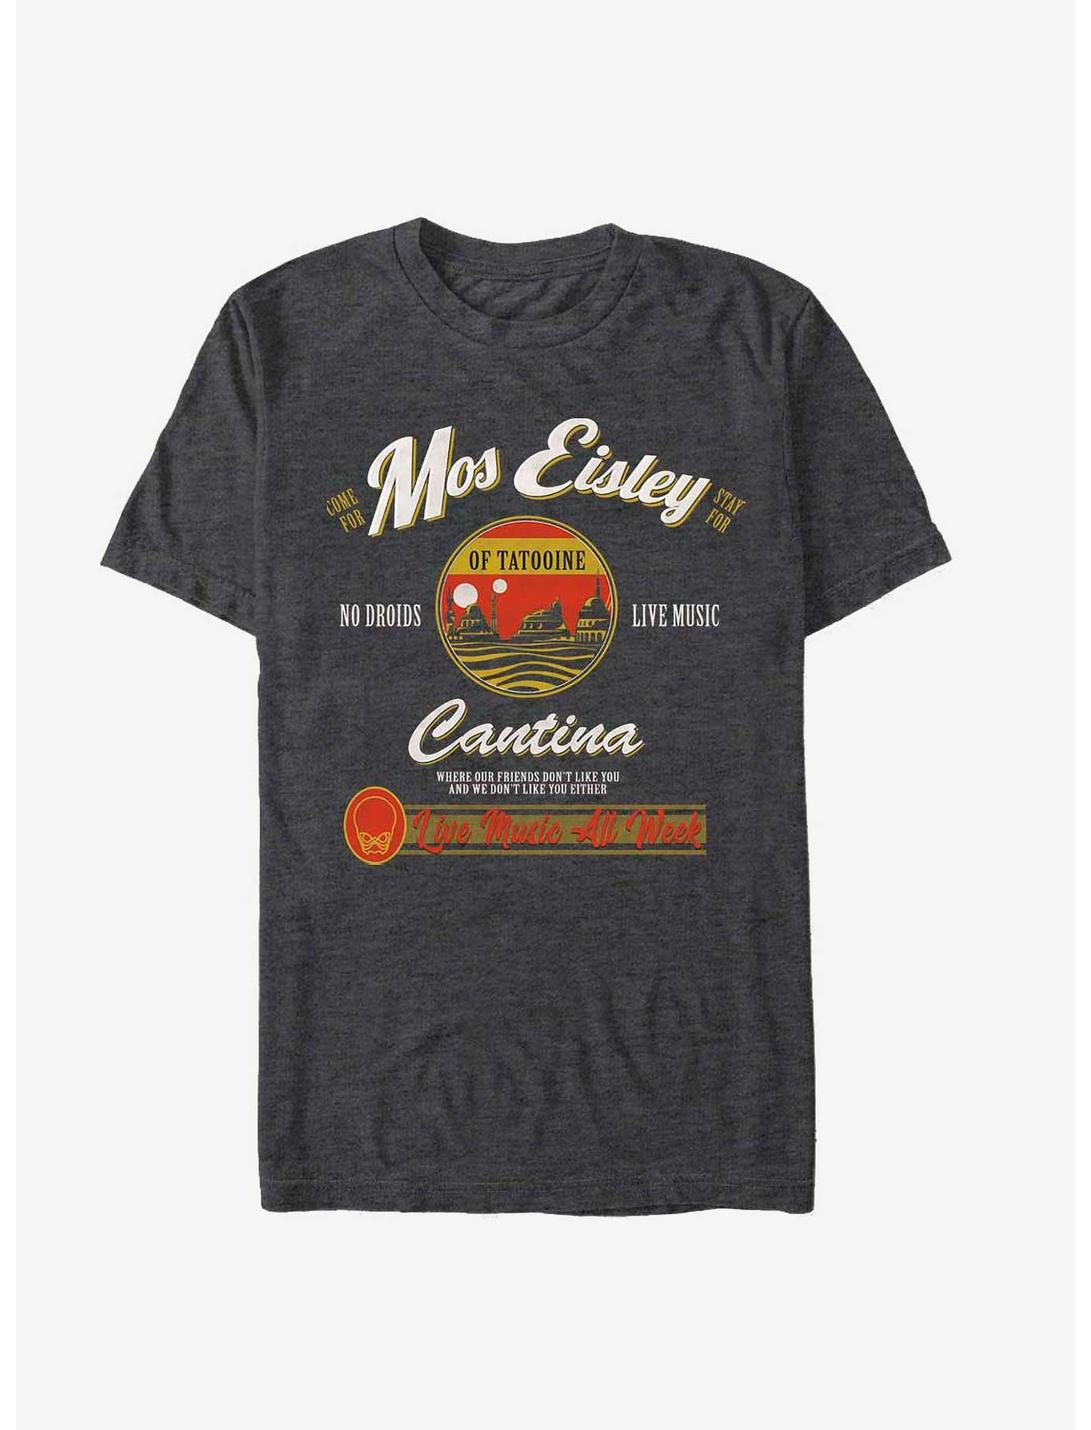 Star Wars Visit Mos Eisley Cantina T-Shirt, CHAR HTR, hi-res